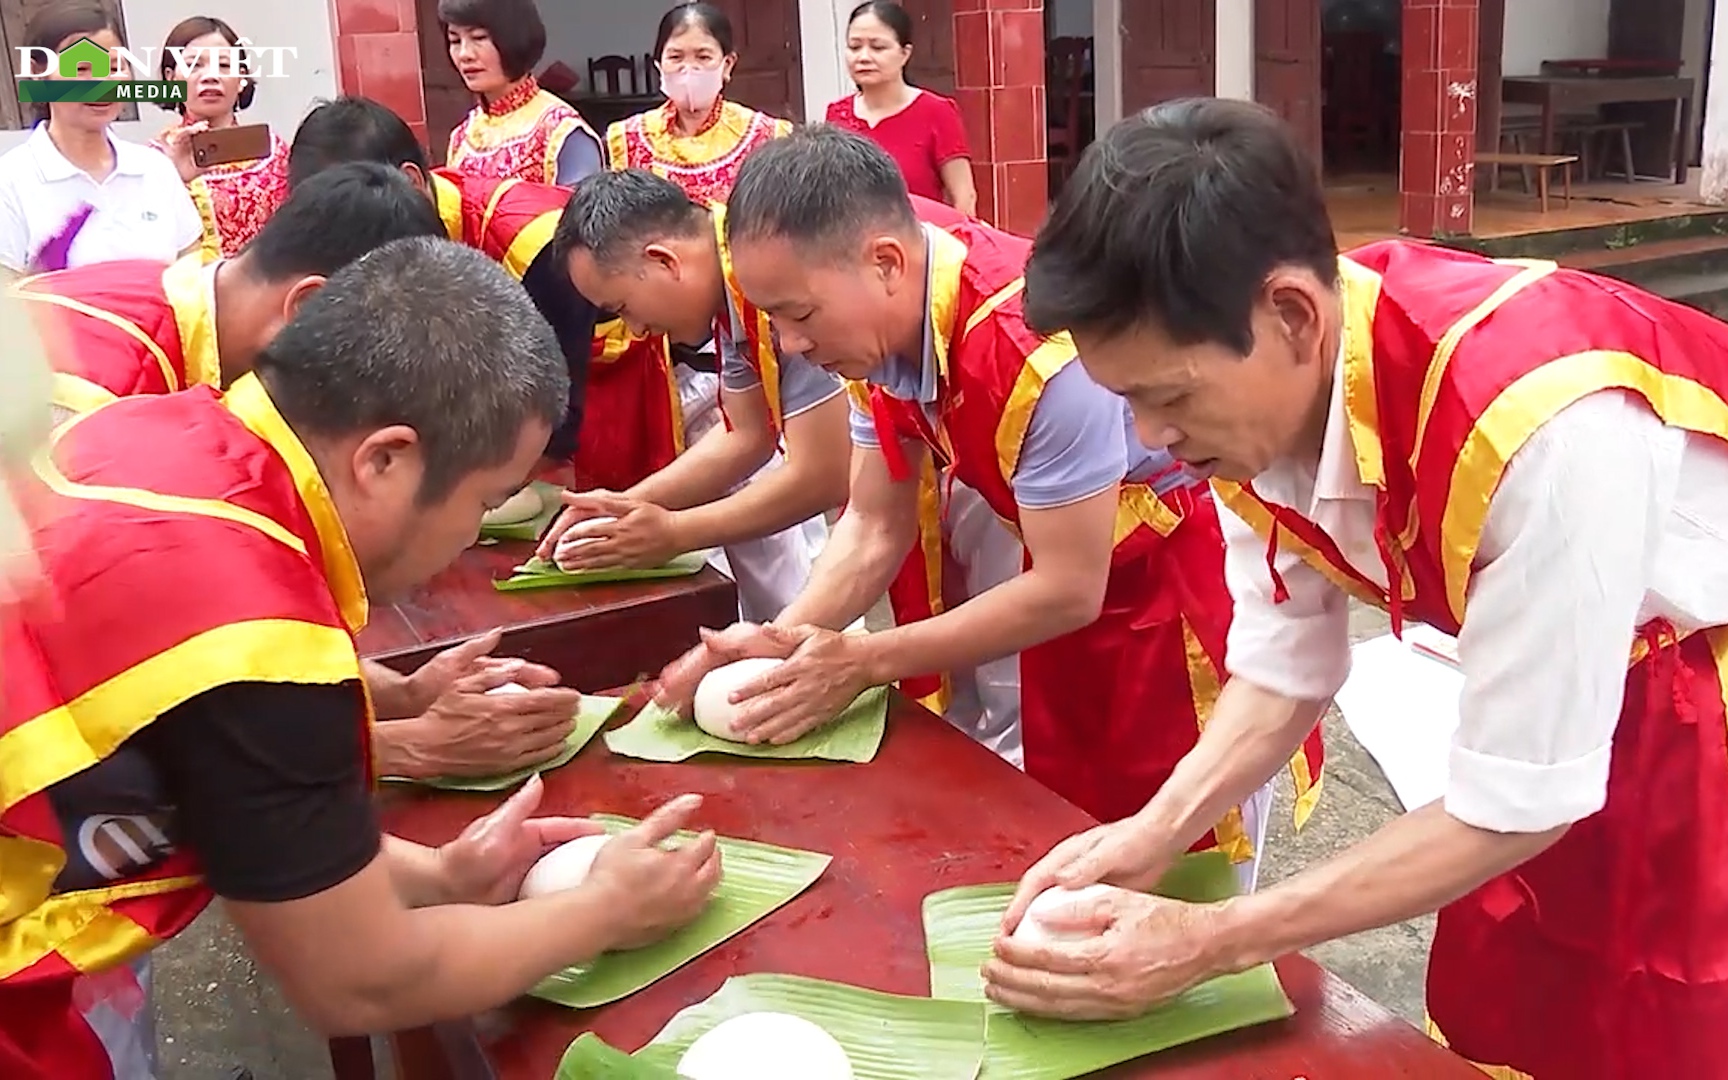 Nghệ nhân giã bánh giầy tích cực luyện tay nghề mong giành "suất" làm bánh dâng Vua Hùng ngày chính giỗ